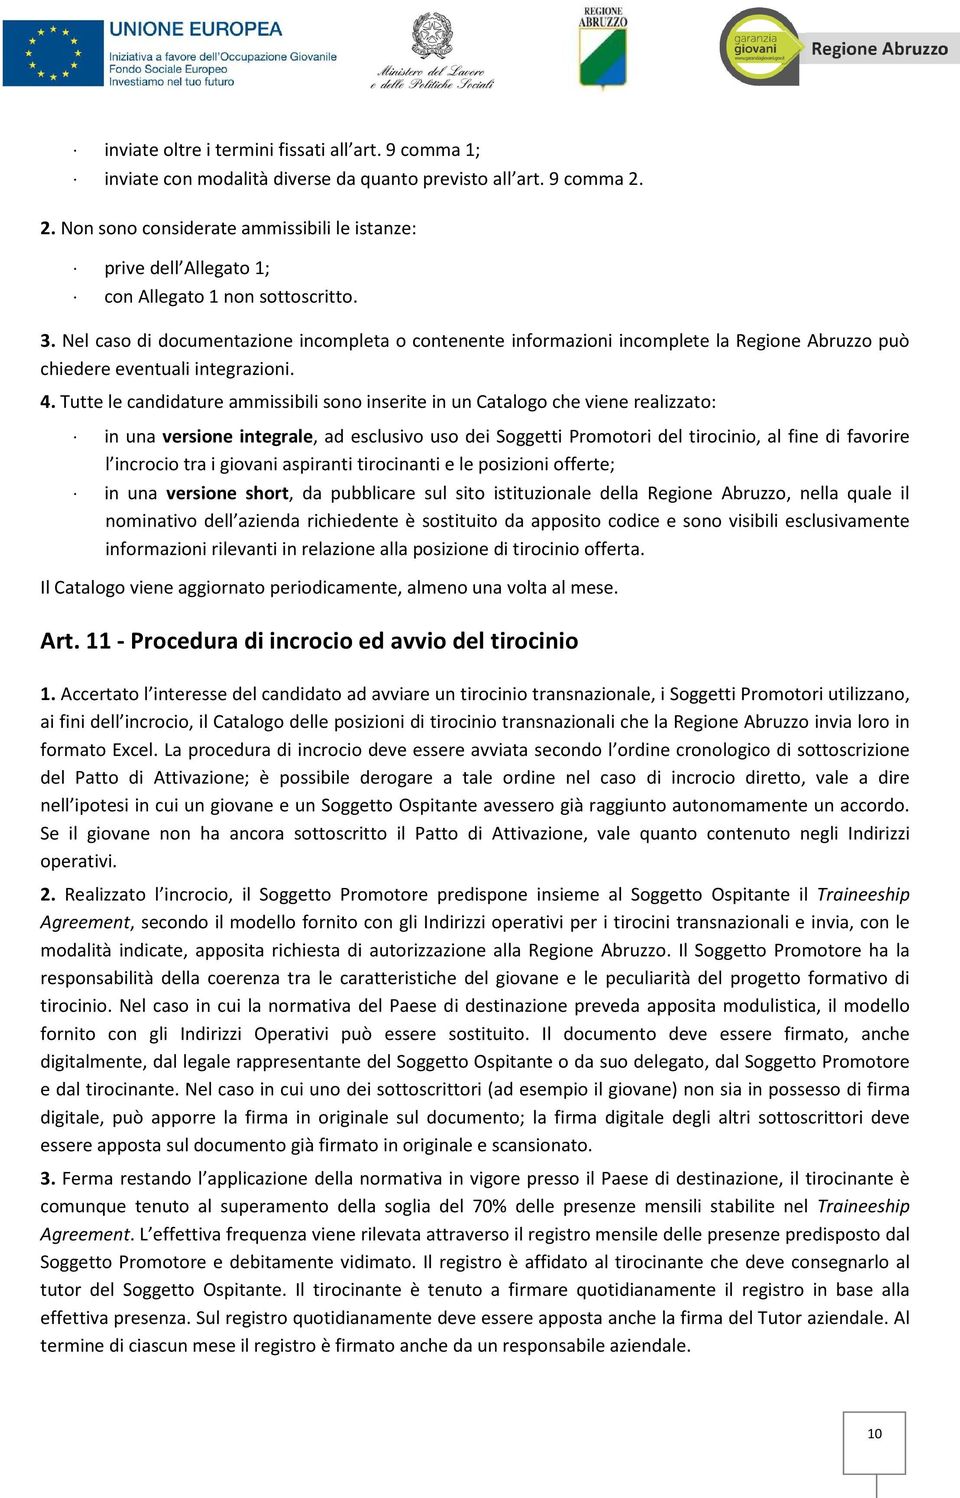 Nel caso di documentazione incompleta o contenente informazioni incomplete la Regione Abruzzo può chiedere eventuali integrazioni. 4.